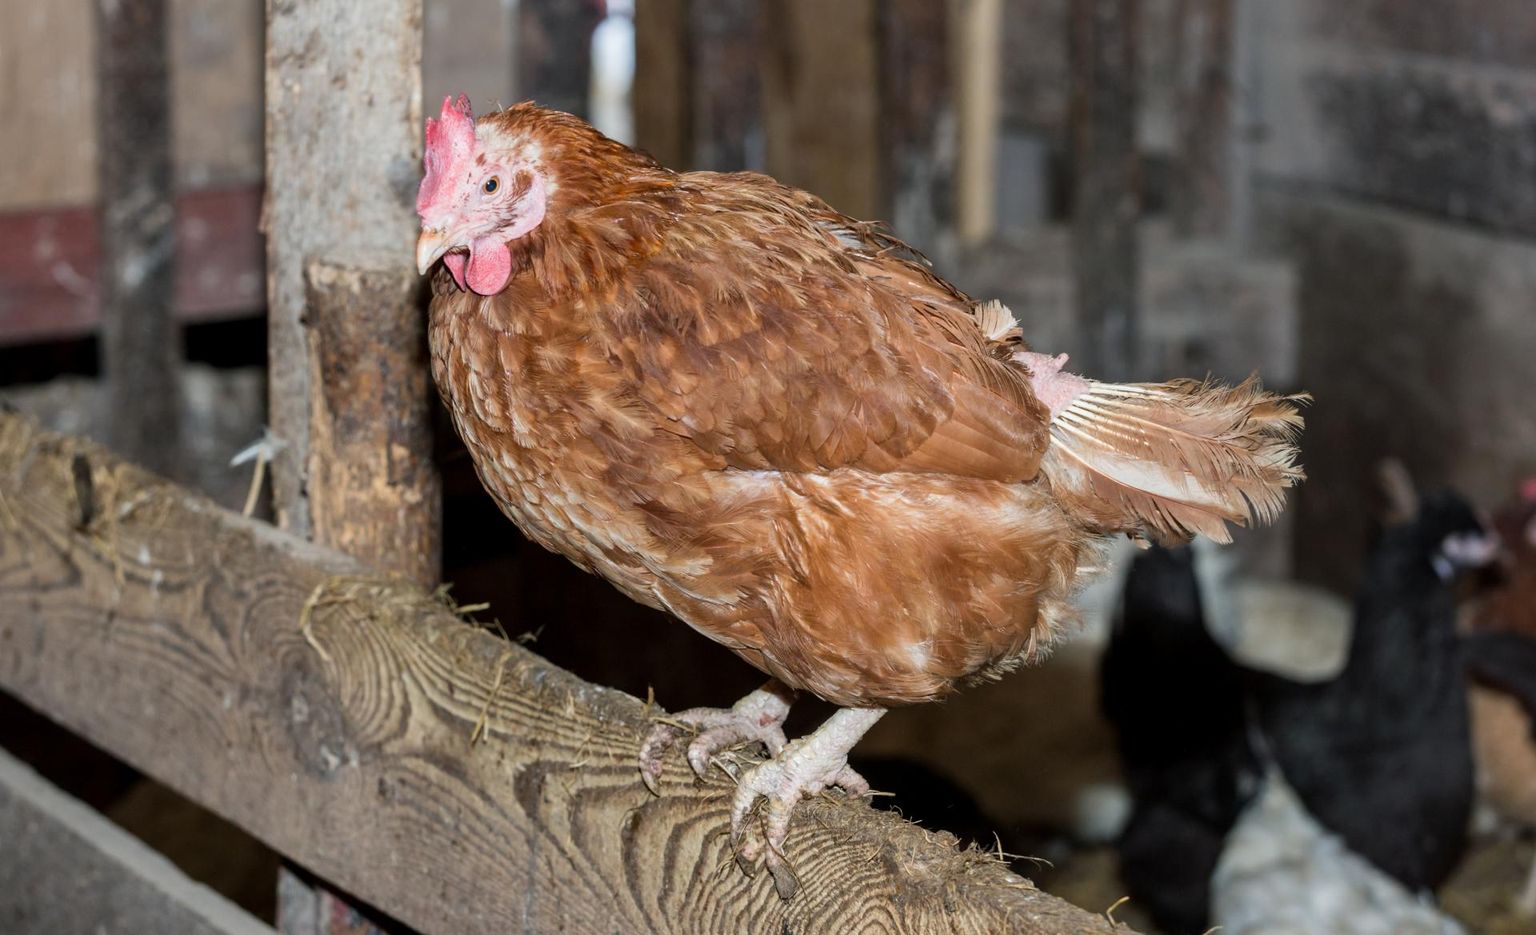 Kana tervise hea indikaator on muna. Kui munemine jääb harvemaks, lakkab sootuks või munakoor pole enam kena ja kõva, tasub esmalt viga otsida kana toidulaualt.